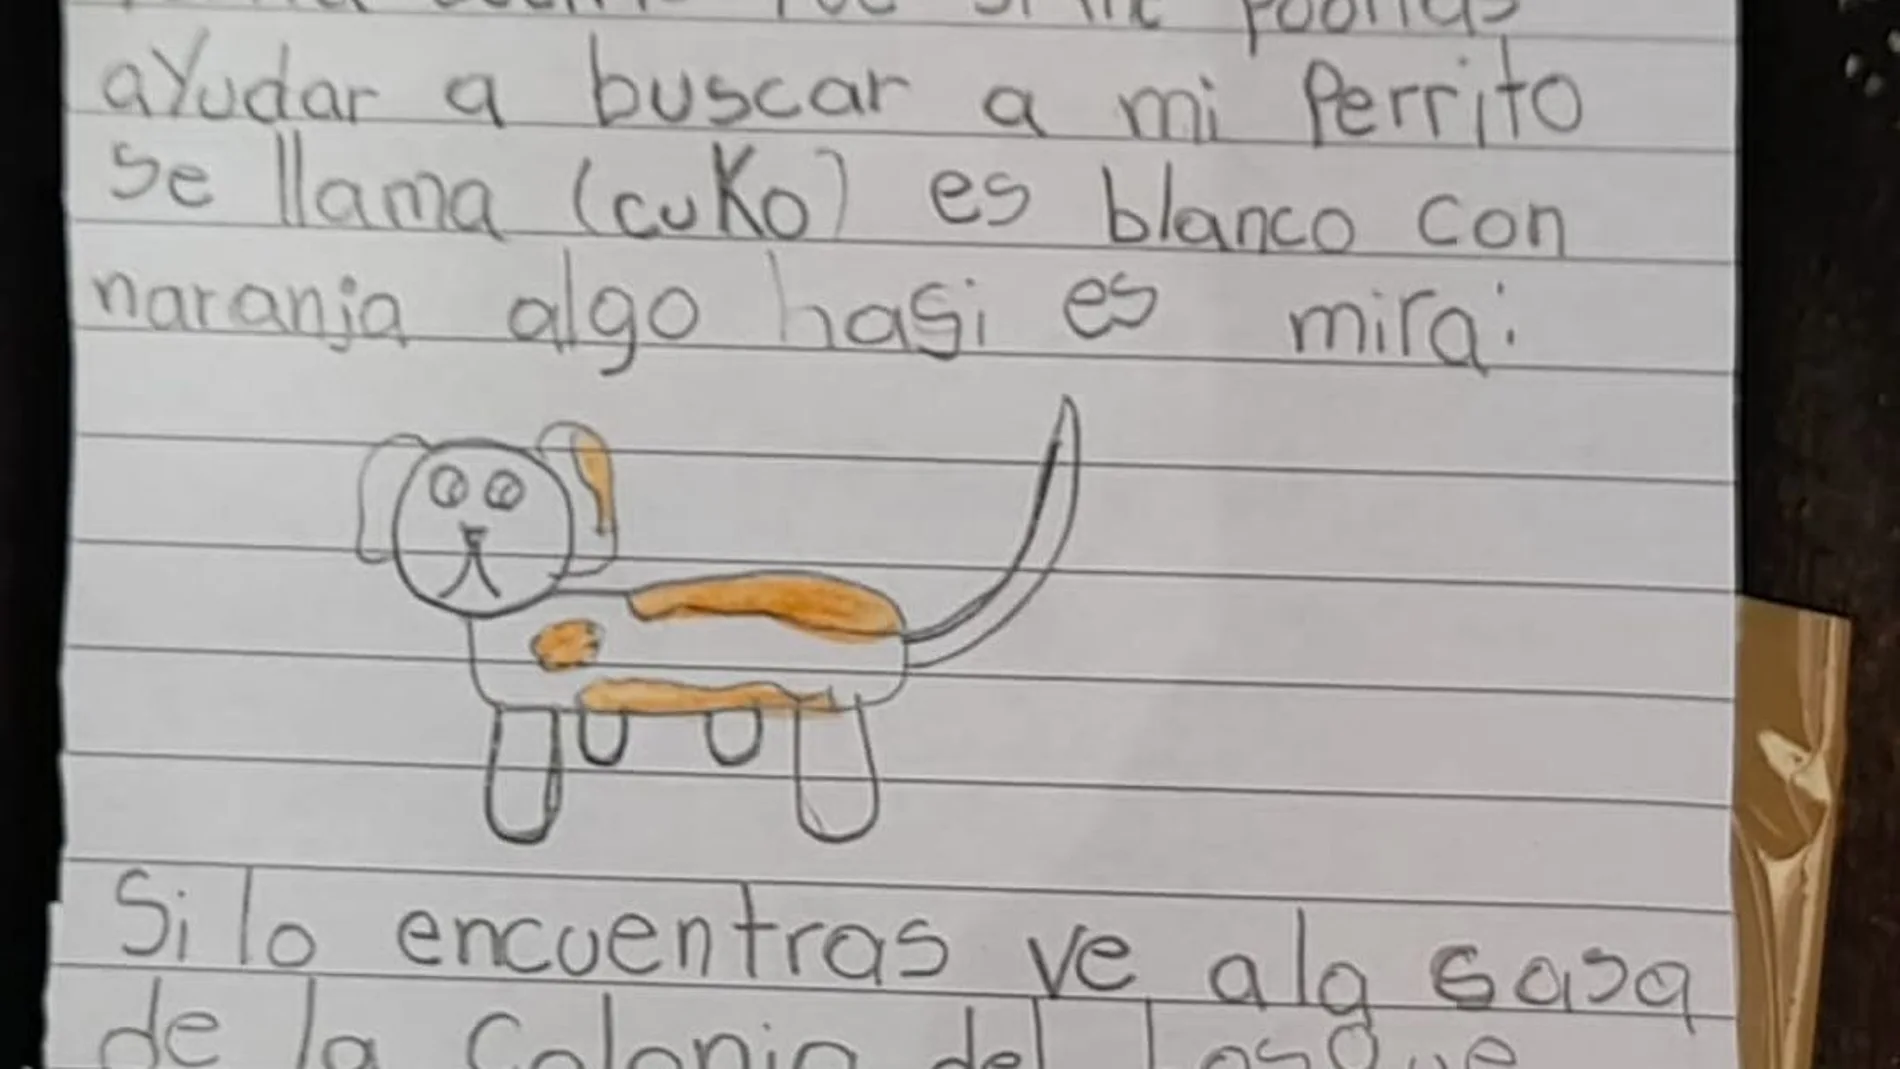 Dibujo de Romi con el que consiguió recuperar a su perro Cuko.